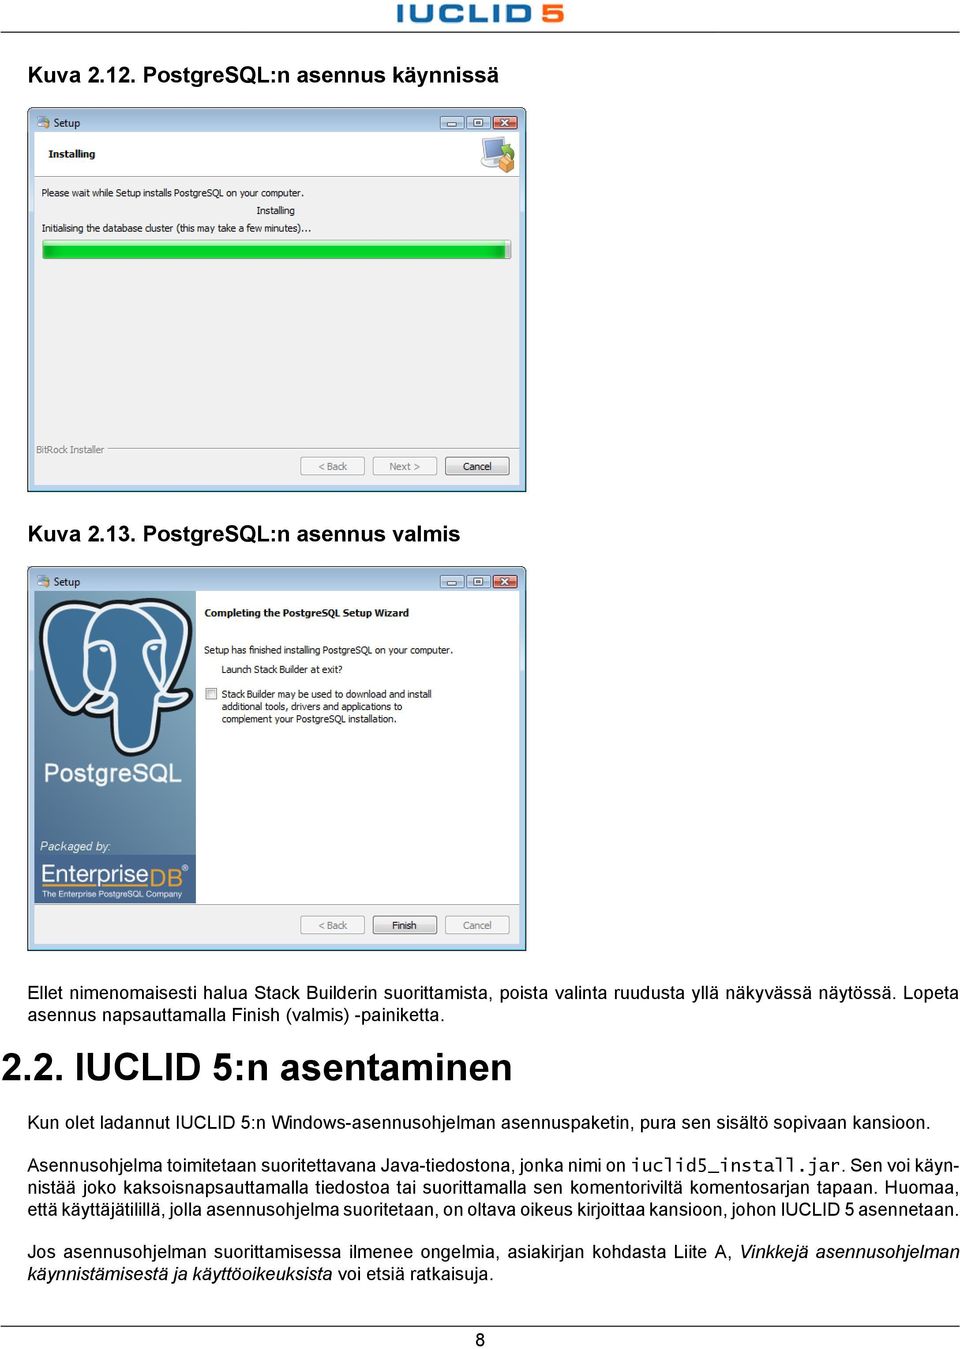 Asennusohjelma toimitetaan suoritettavana Java-tiedostona, jonka nimi on iuclid5_install.jar.